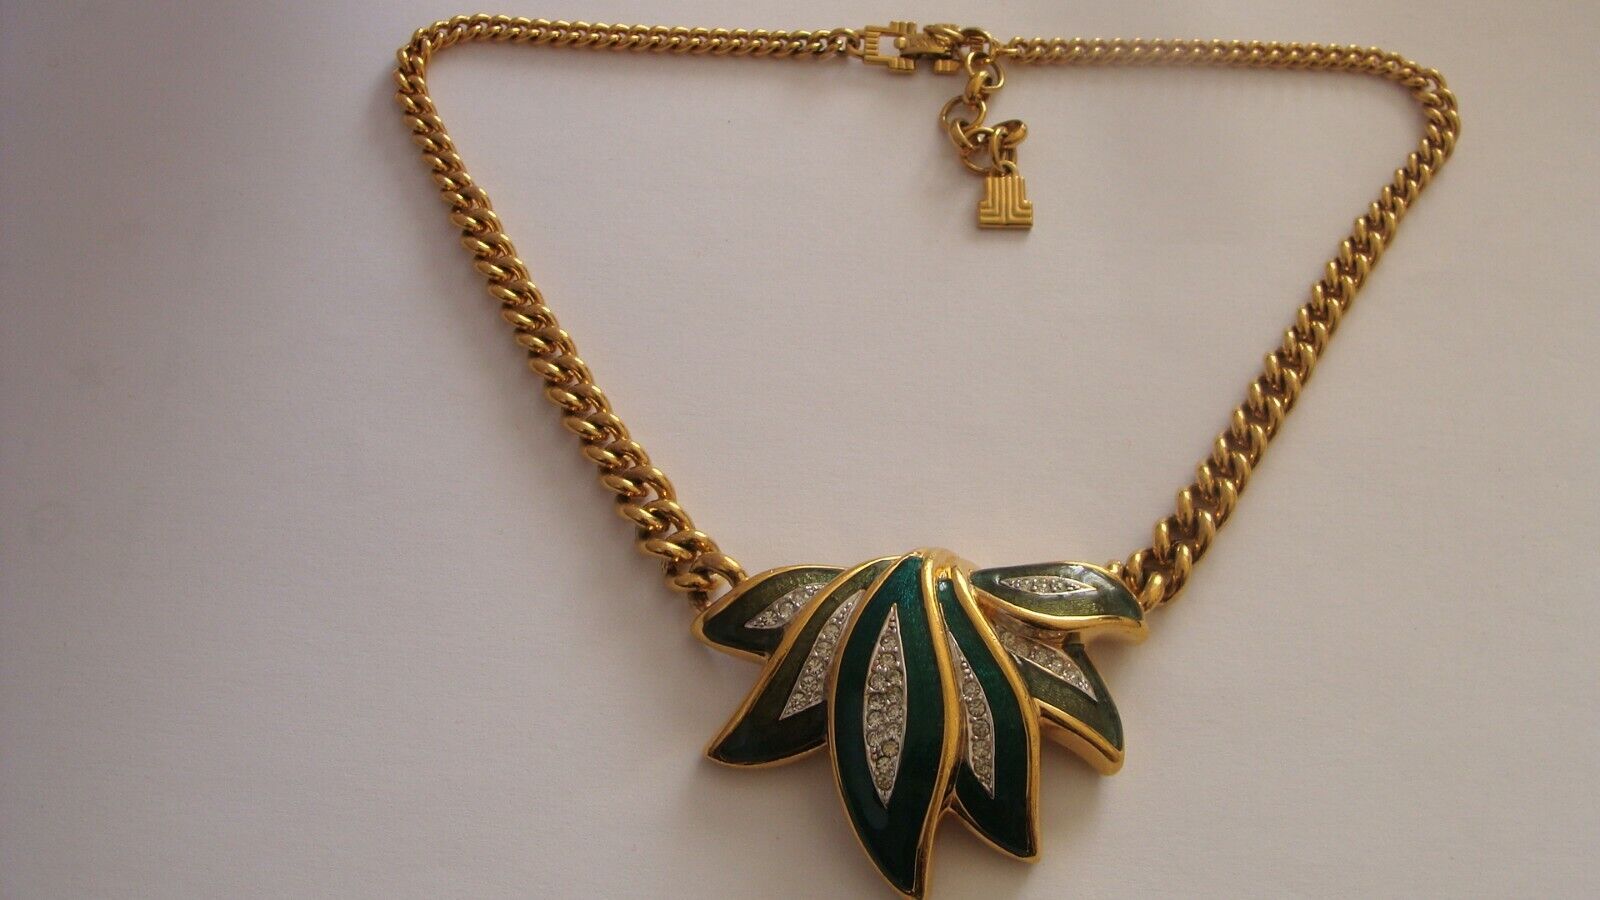 Vintage collier Lanvin Paris Necklace gold plated enamel  diamant french designe